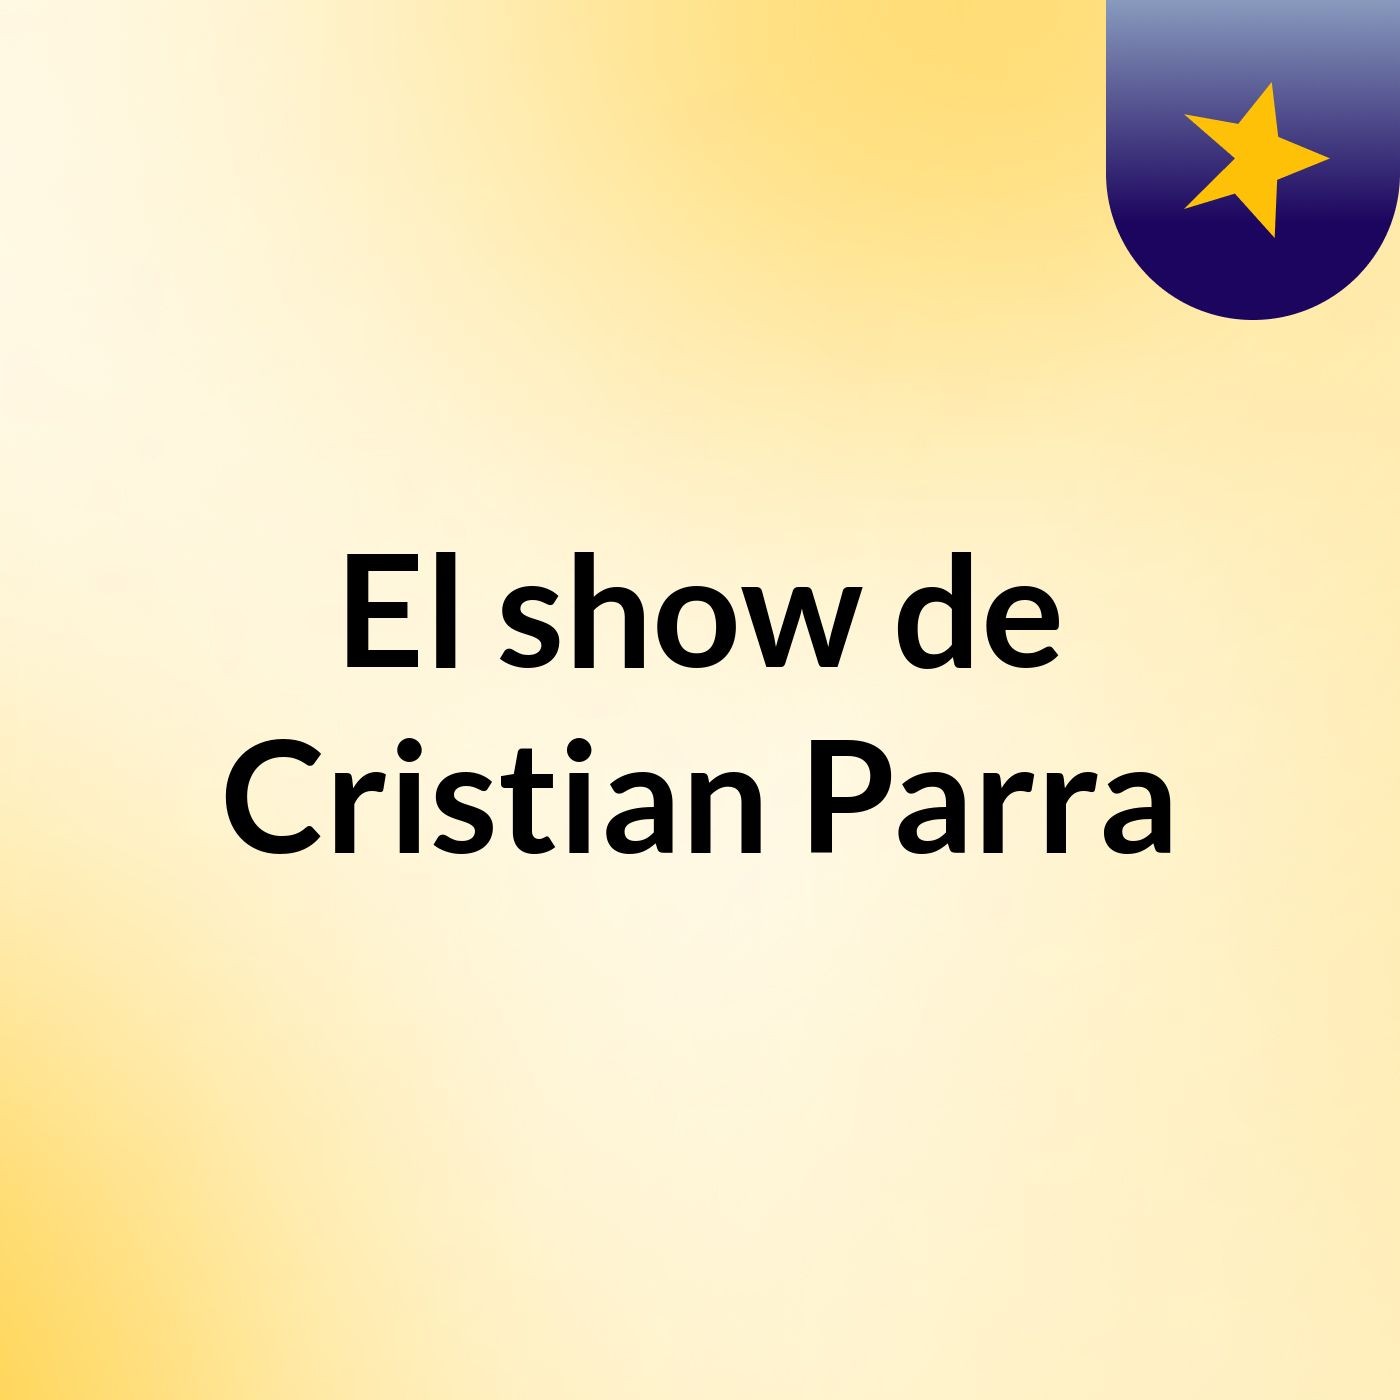 El show de Cristian Parra